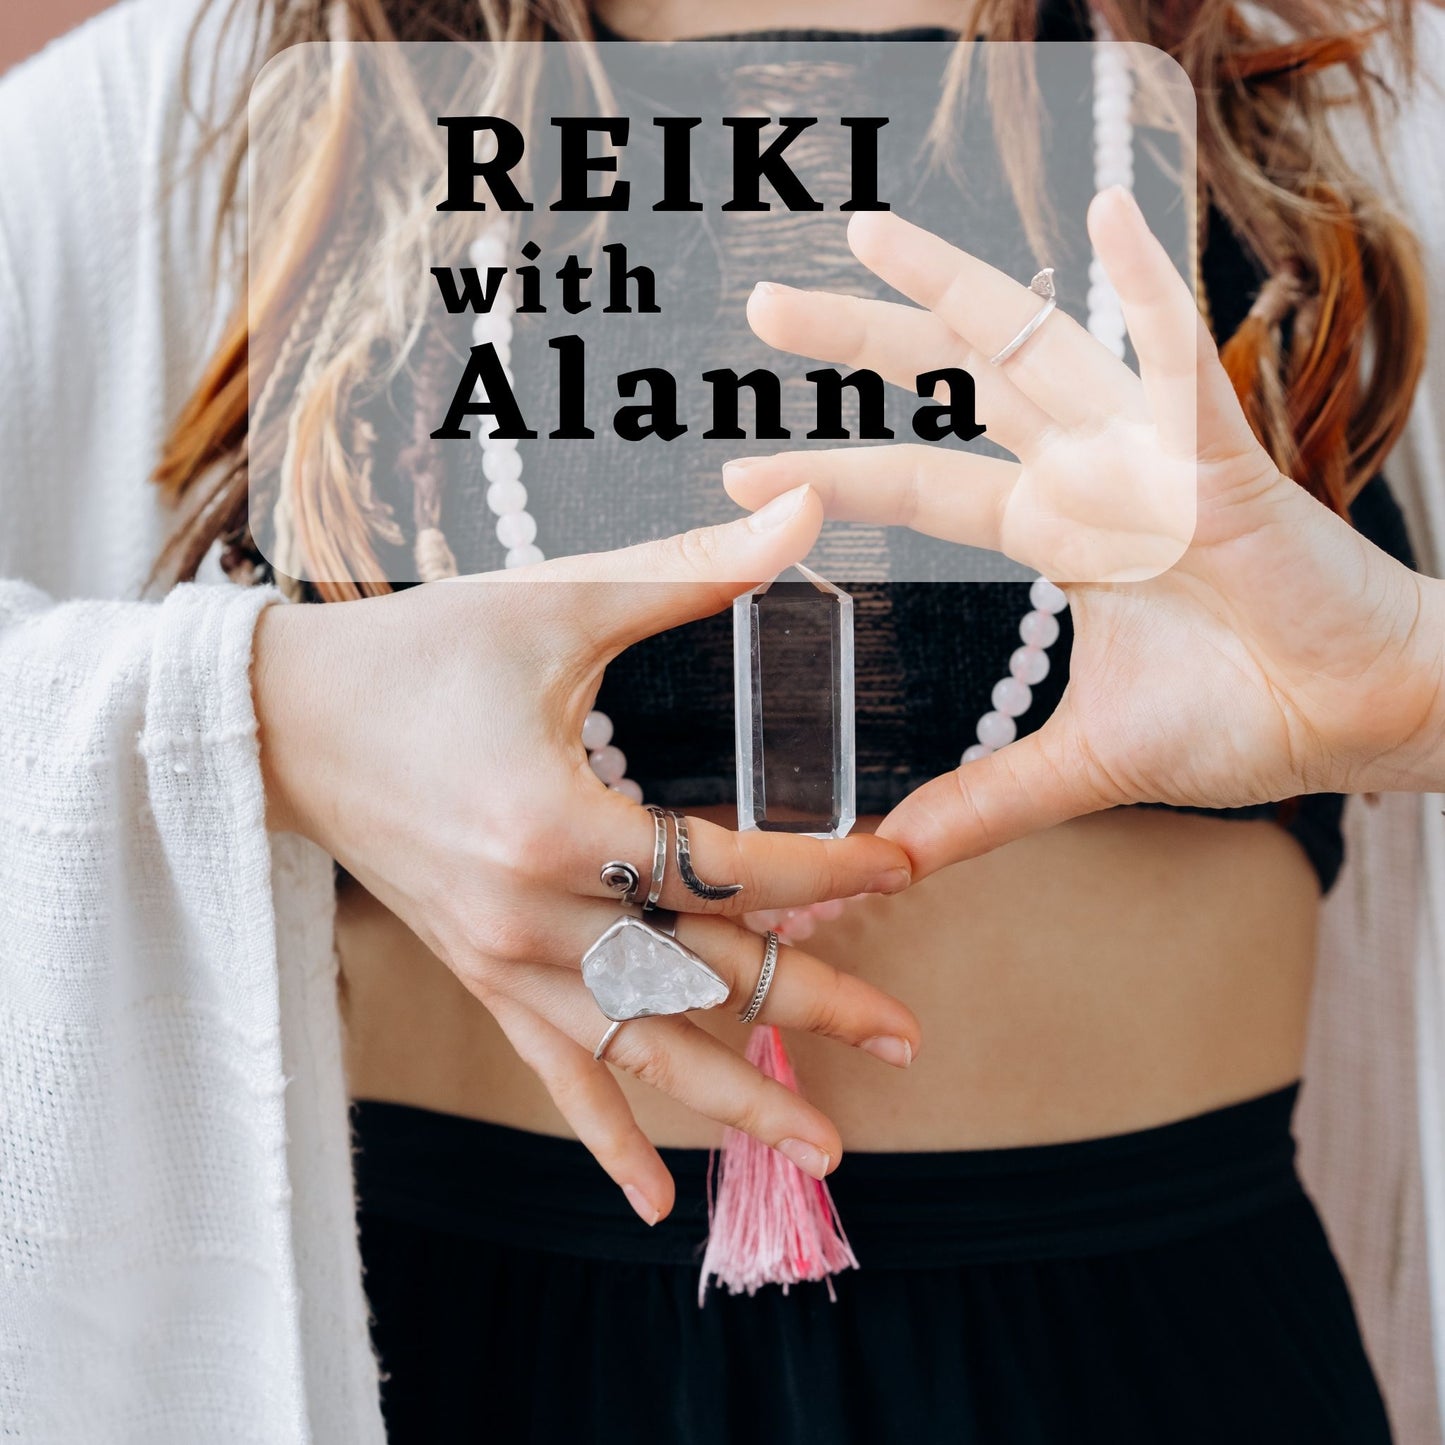 Reiki with Alanna: March 13 & 27